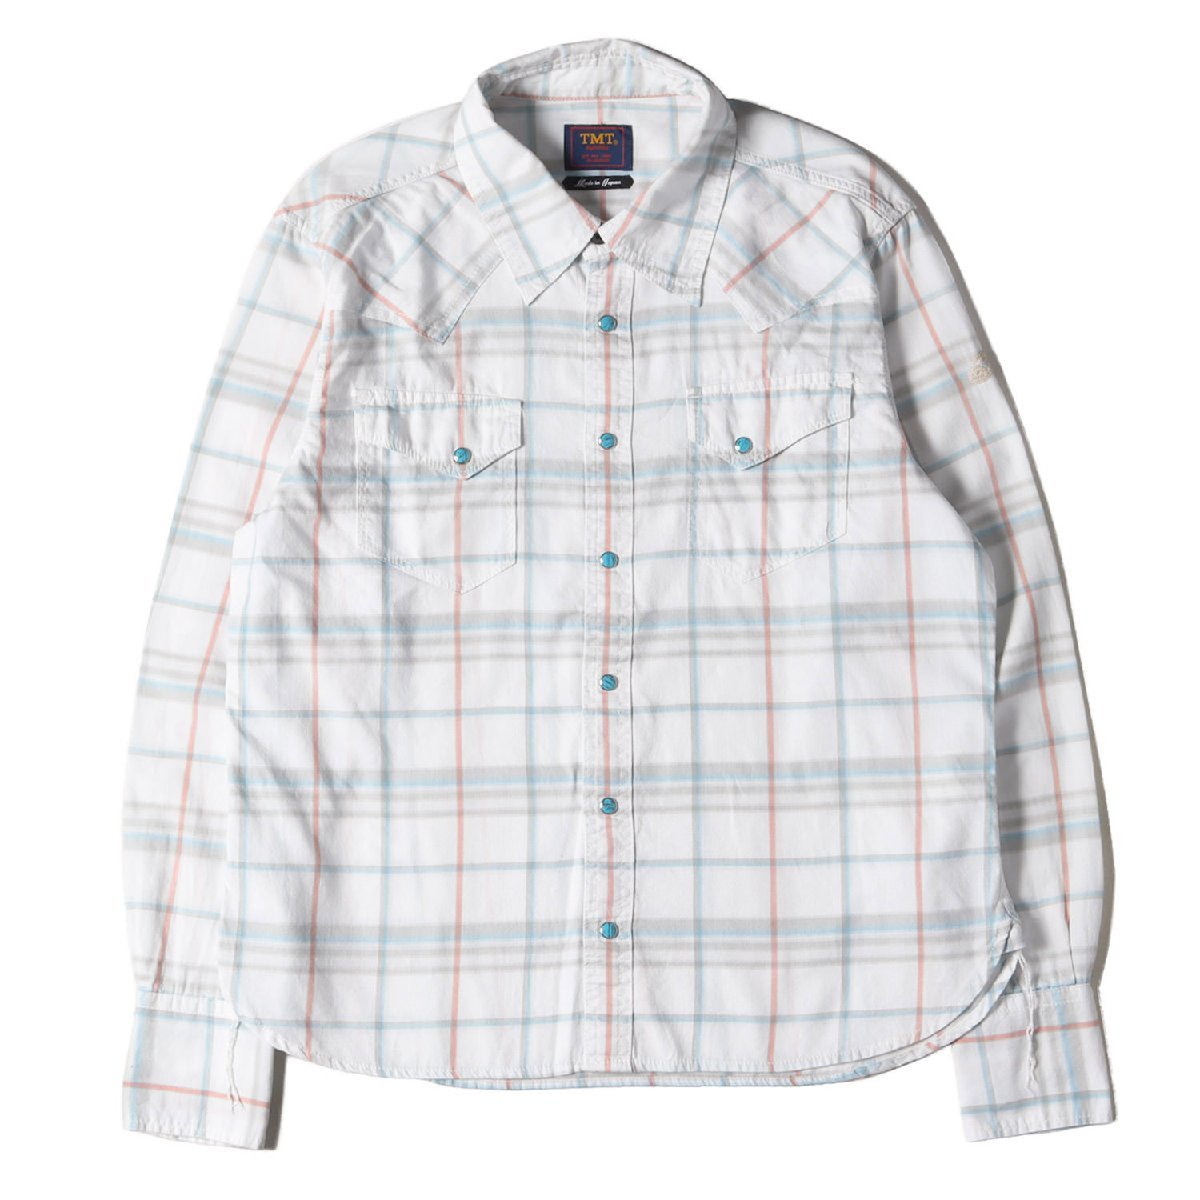 TMT ティーエムティー シャツ サイズ:L ウエスタンシャツ ツイル チェック THIN TWILL CLOTH CHECK SHIRTS 18SS トップス カジュアル